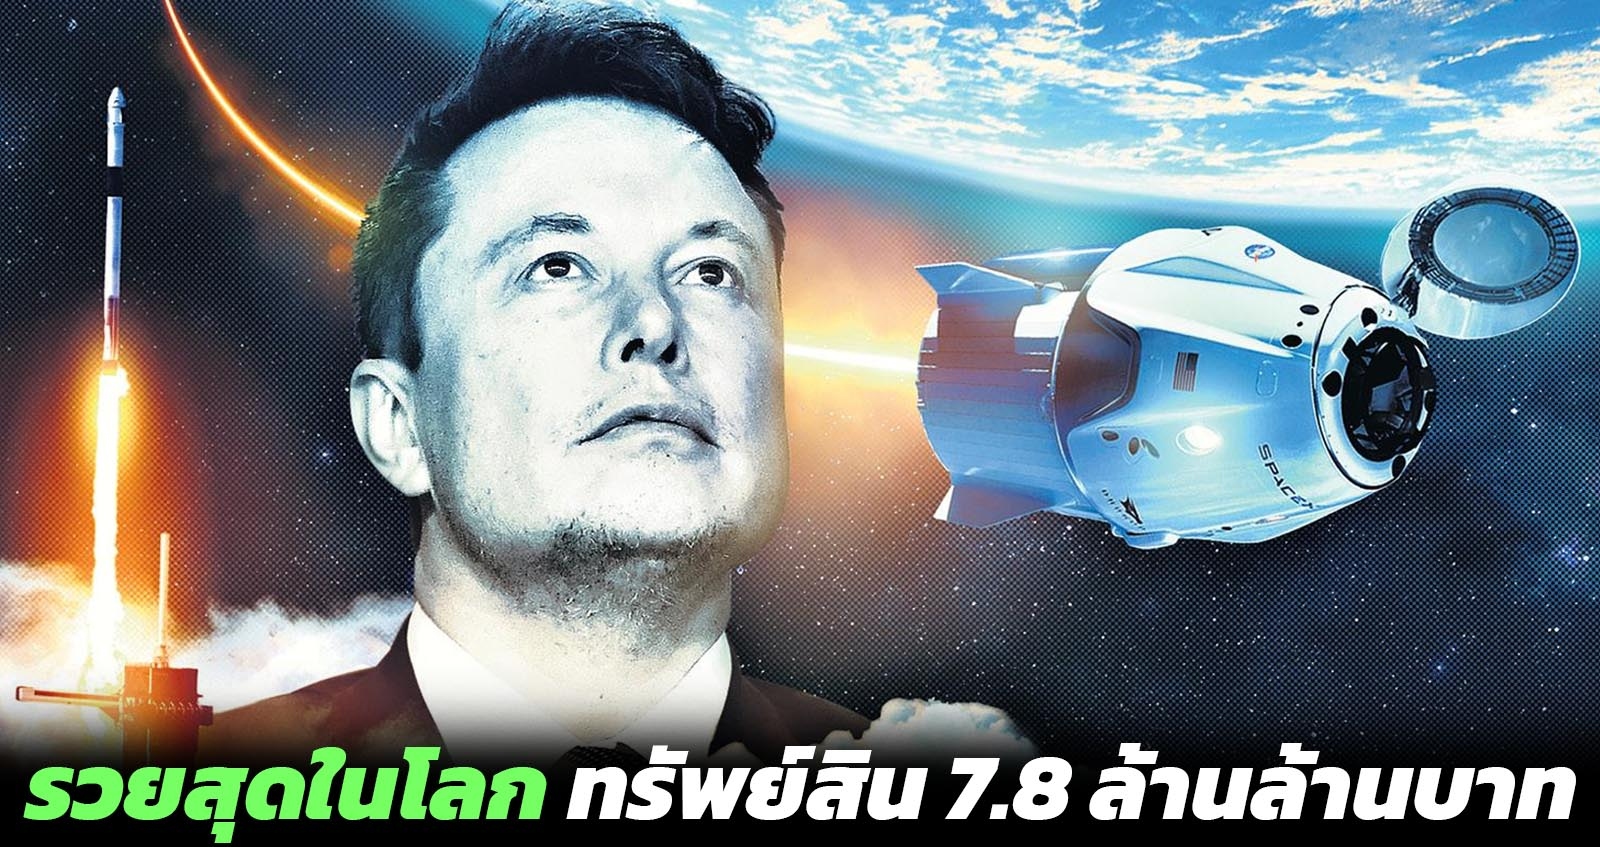 Elon Musk ขึ้นแท่นมหาเศรษฐี อันดับ 1 ของโลก ด้วยทรัพย์สิน 7.86 ล้านล้าน